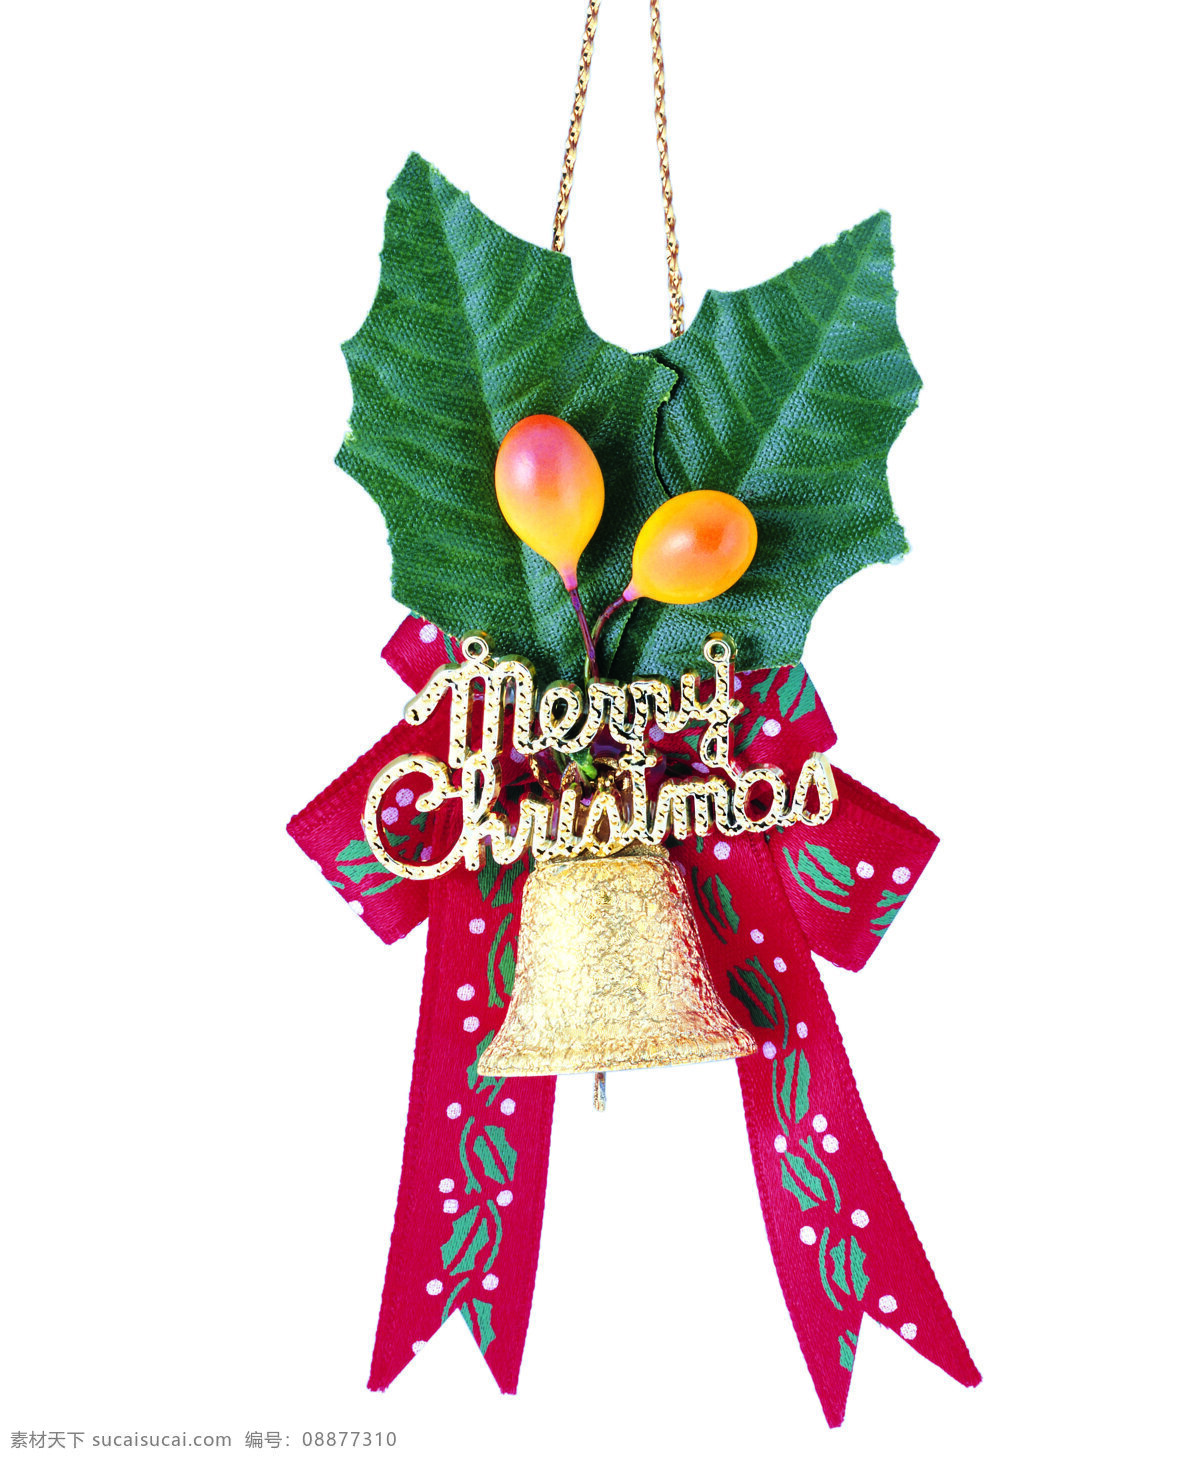 圣诞免费下载 节日庆祝图片 铃铛 设计图 文化艺术 圣诞节饰物 节日素材